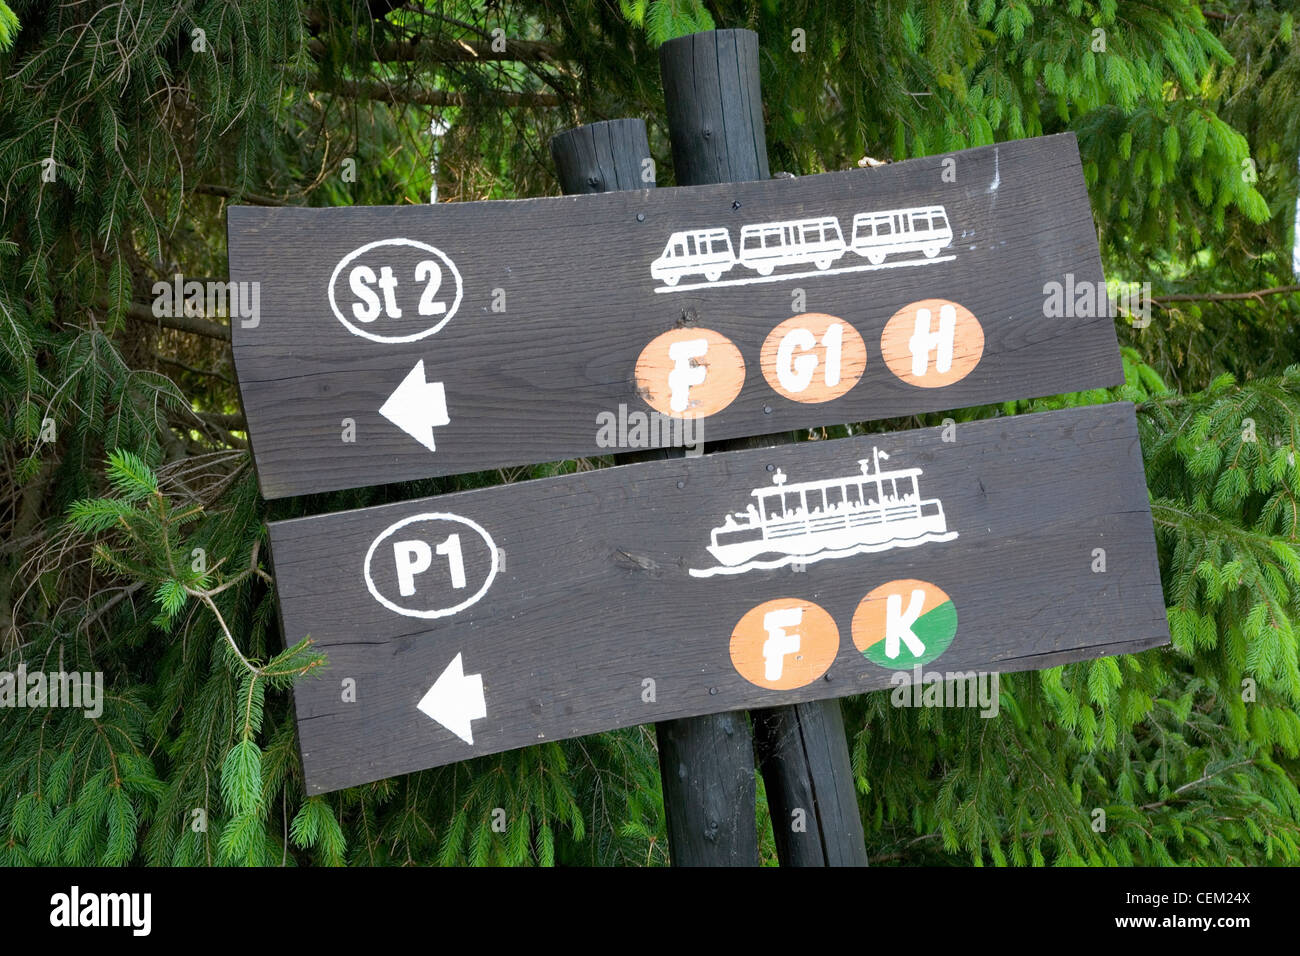 Il Parco Nazionale dei Laghi di Plitvice, Lika-Senj Affitto, Croazia. Segno dare indicazioni alla fermata del bus e traghetto pontile sul lago Kozjak. Foto Stock